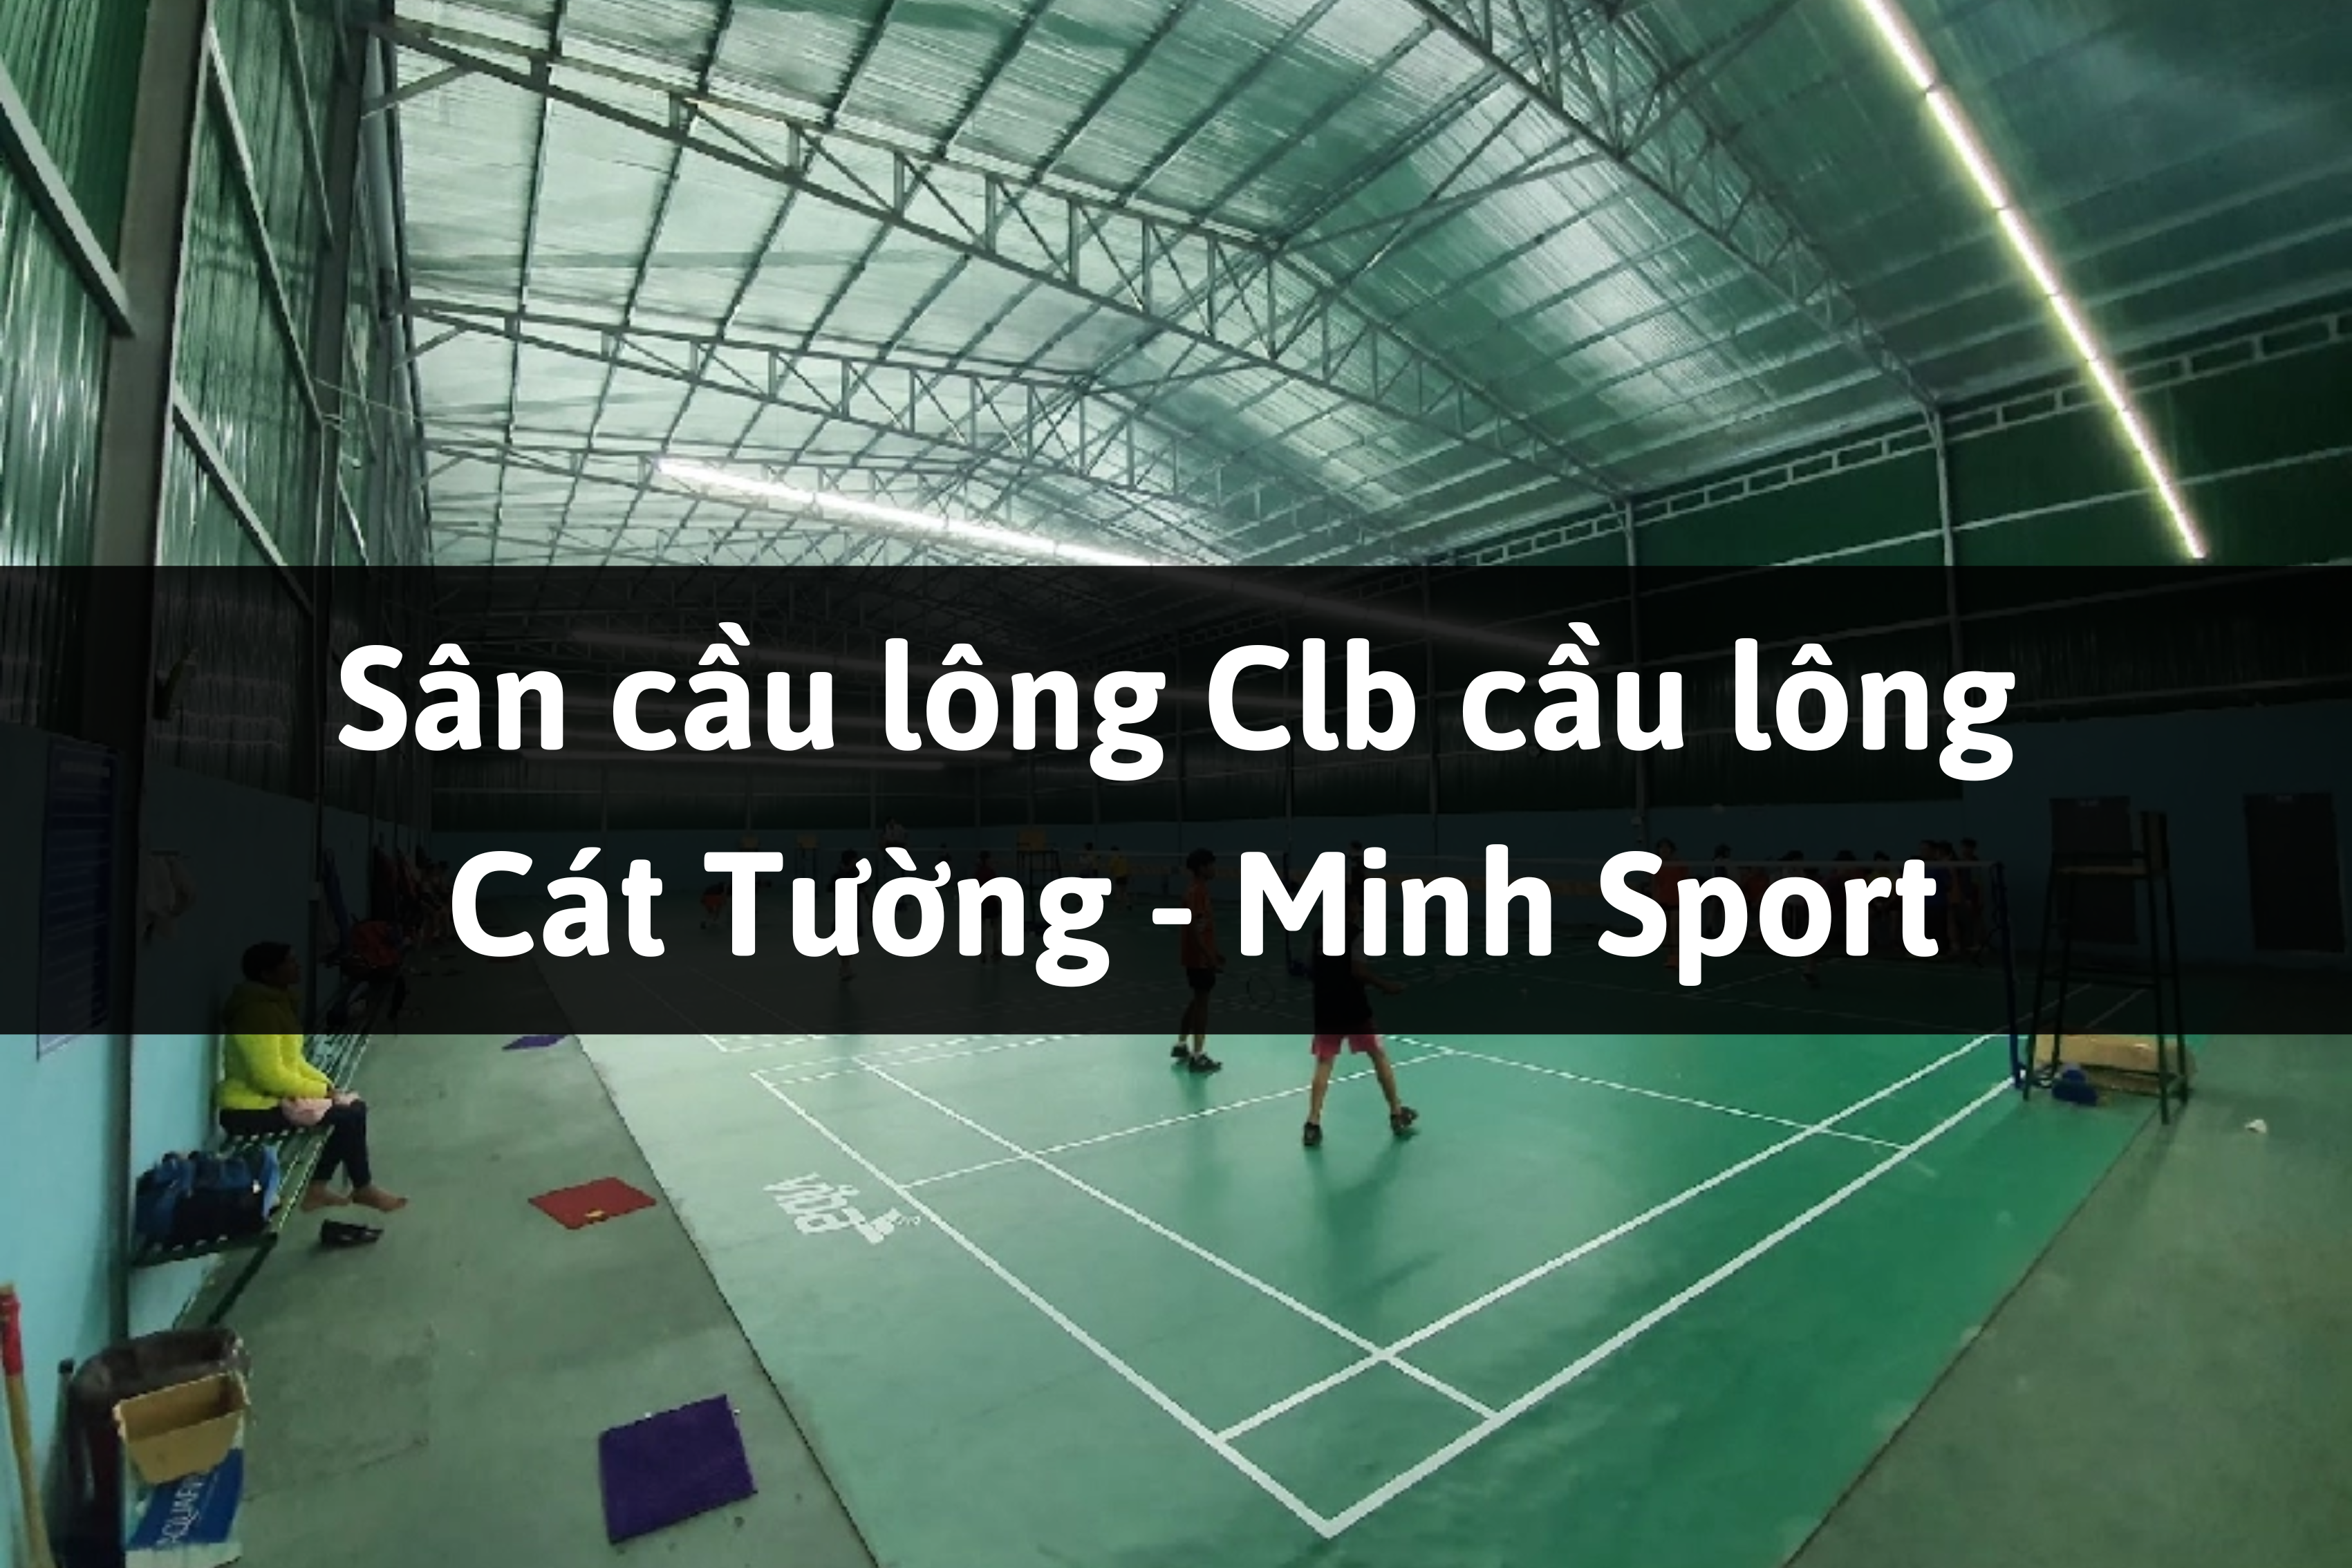 Sân cầu lông Clb cầu lông Cát Tường - Minh Sport, Lâm Hà, Lâm Đồng